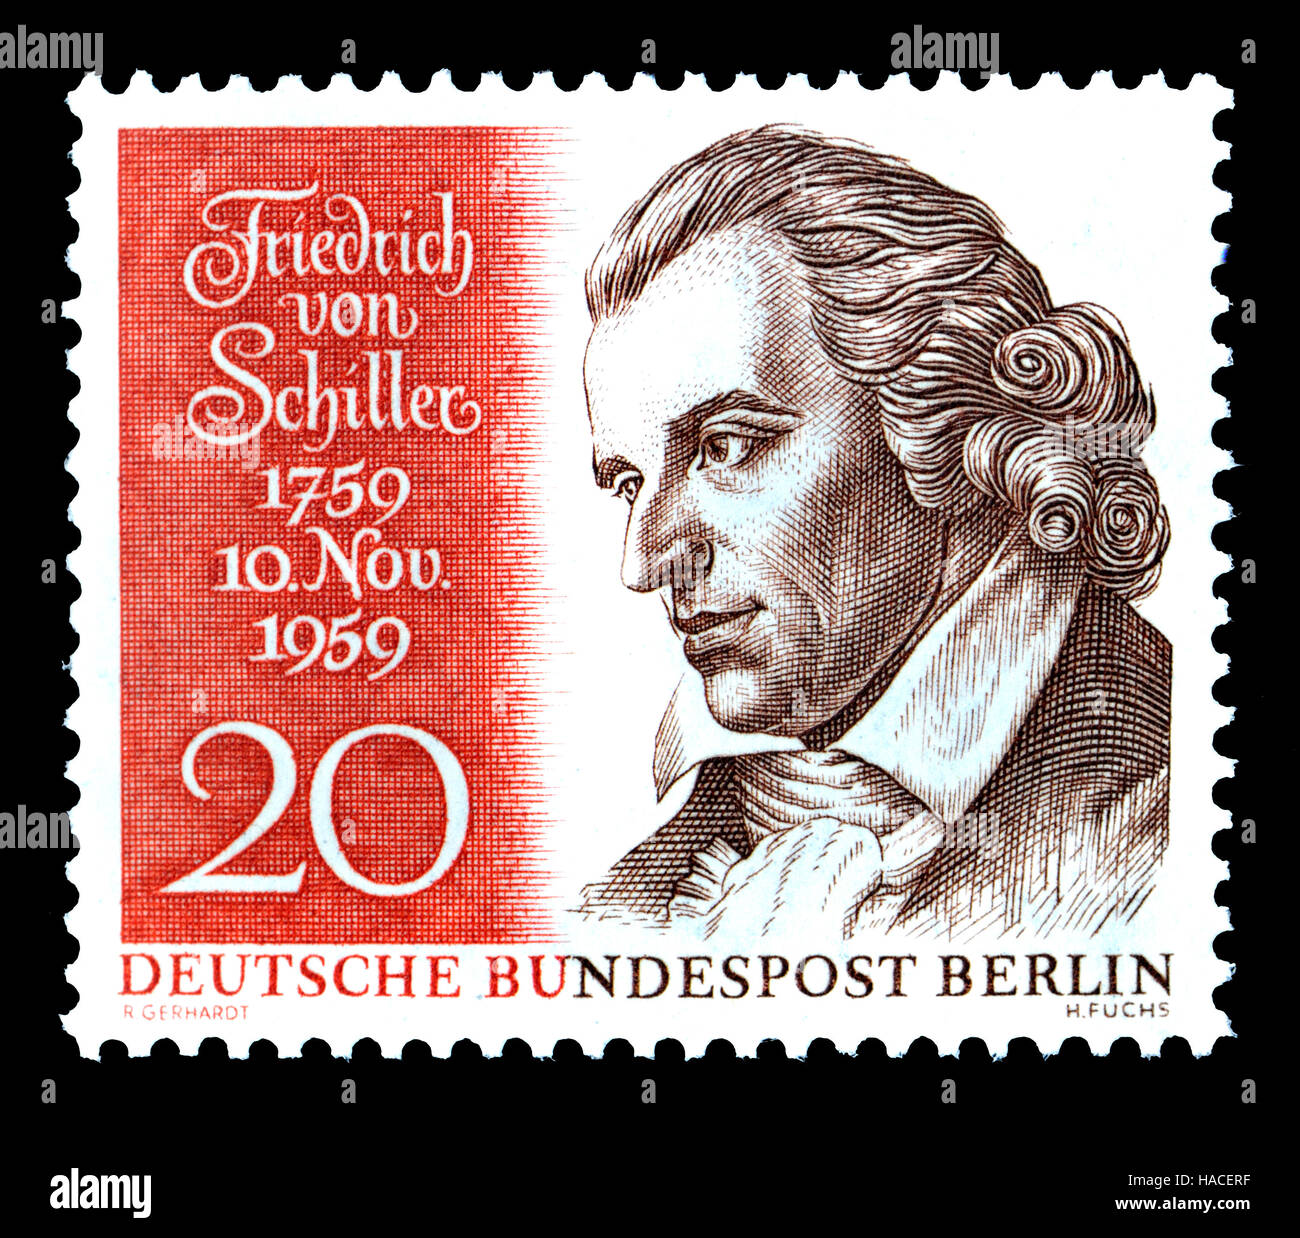 Timbre allemand (1959) : Johann Christoph Friedrich von Schiller (1759-1805) poète allemand, philosophe, médecin, historien et auteur dramatique. Banque D'Images